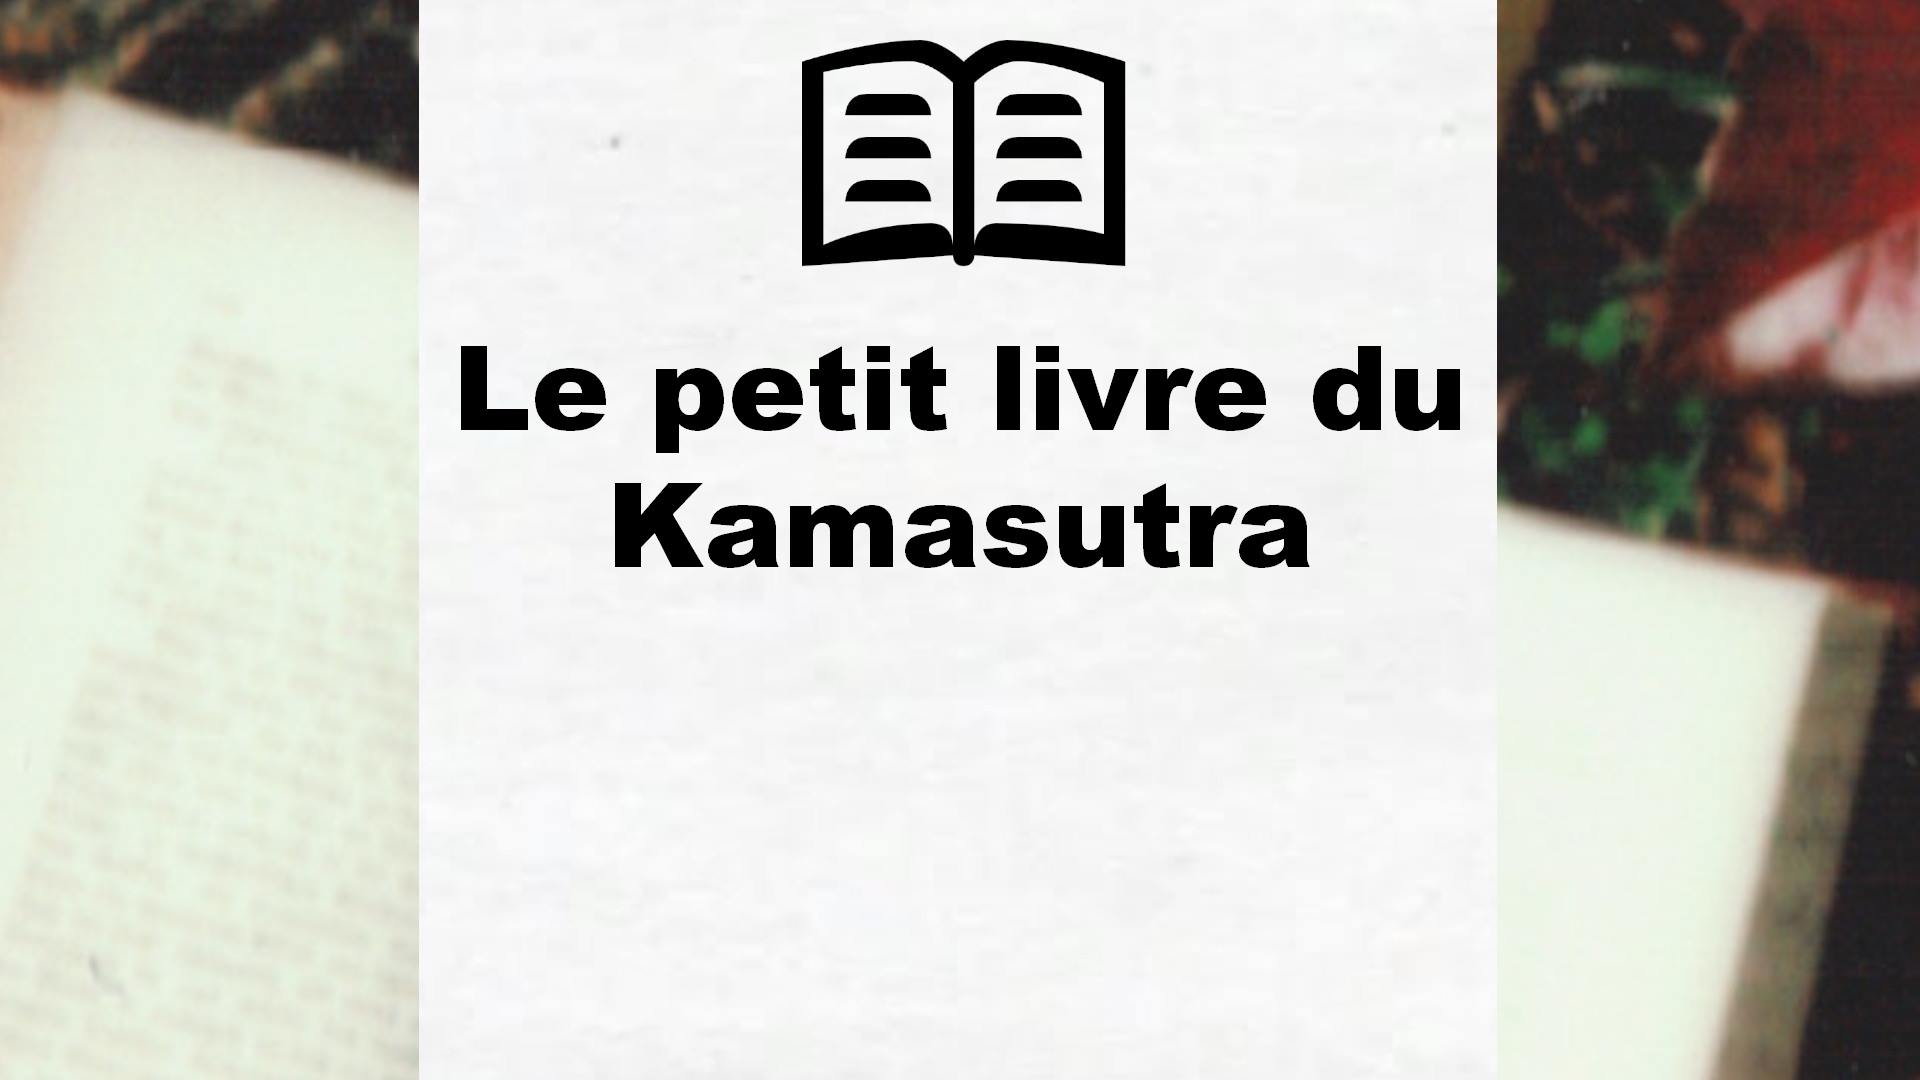 Le petit livre du Kamasutra – Critique